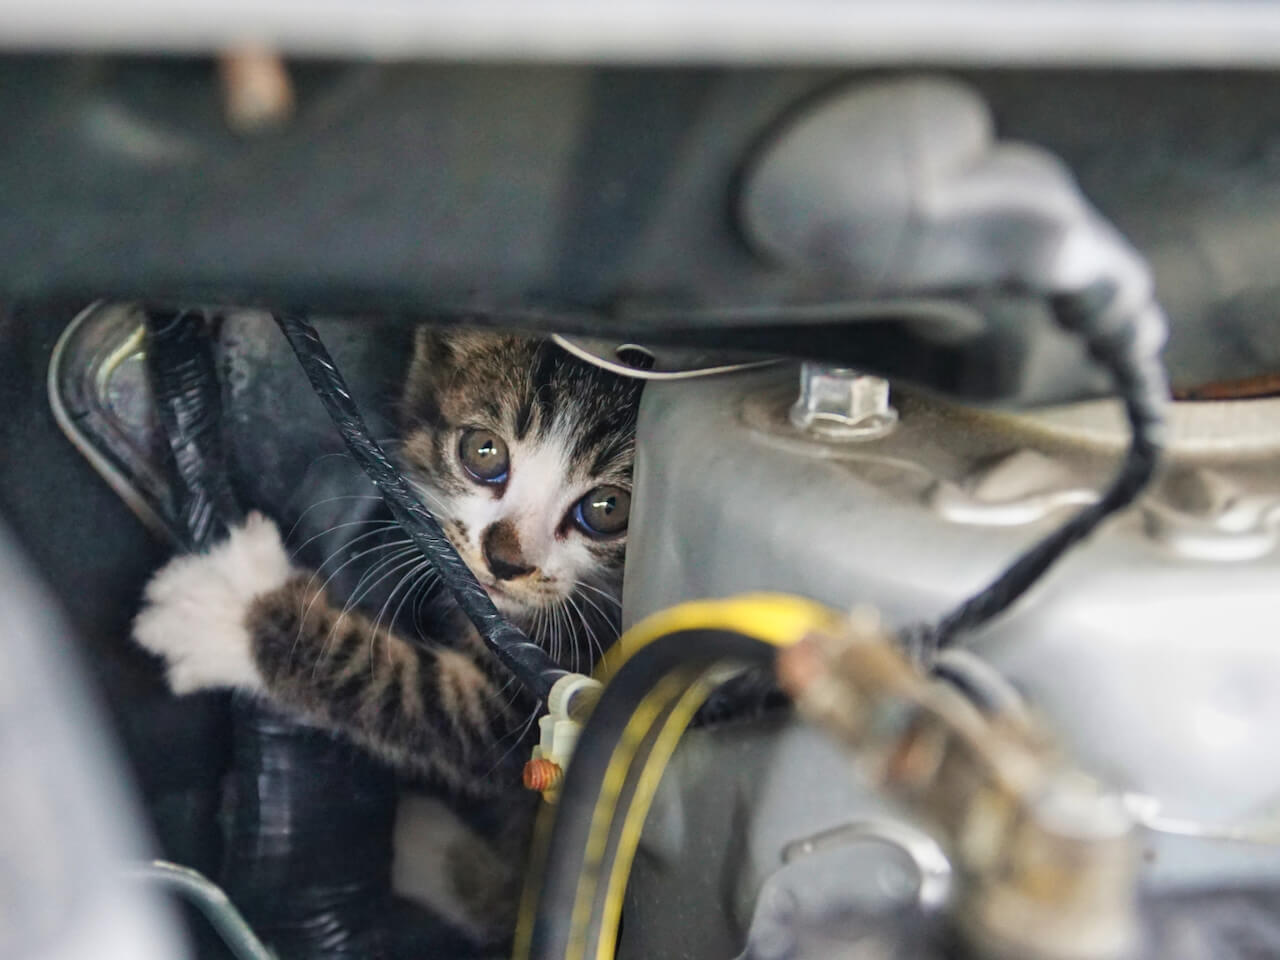 ボンネットの中のエンジンルームに潜り込んだ子猫のイメージ写真